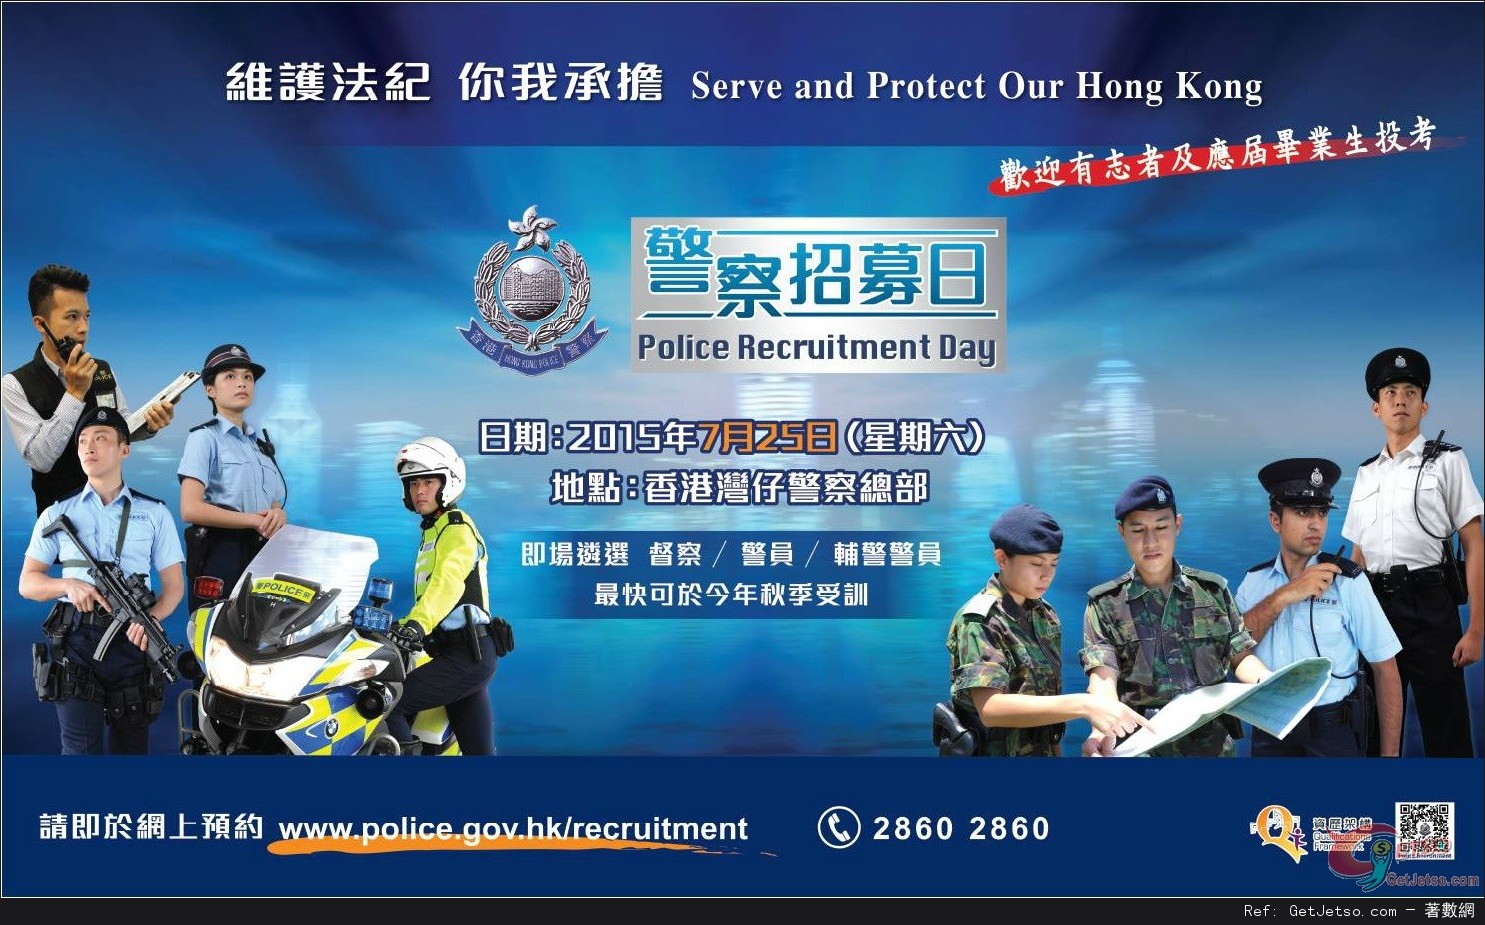 香港警察招募日(15年7月25日)圖片1